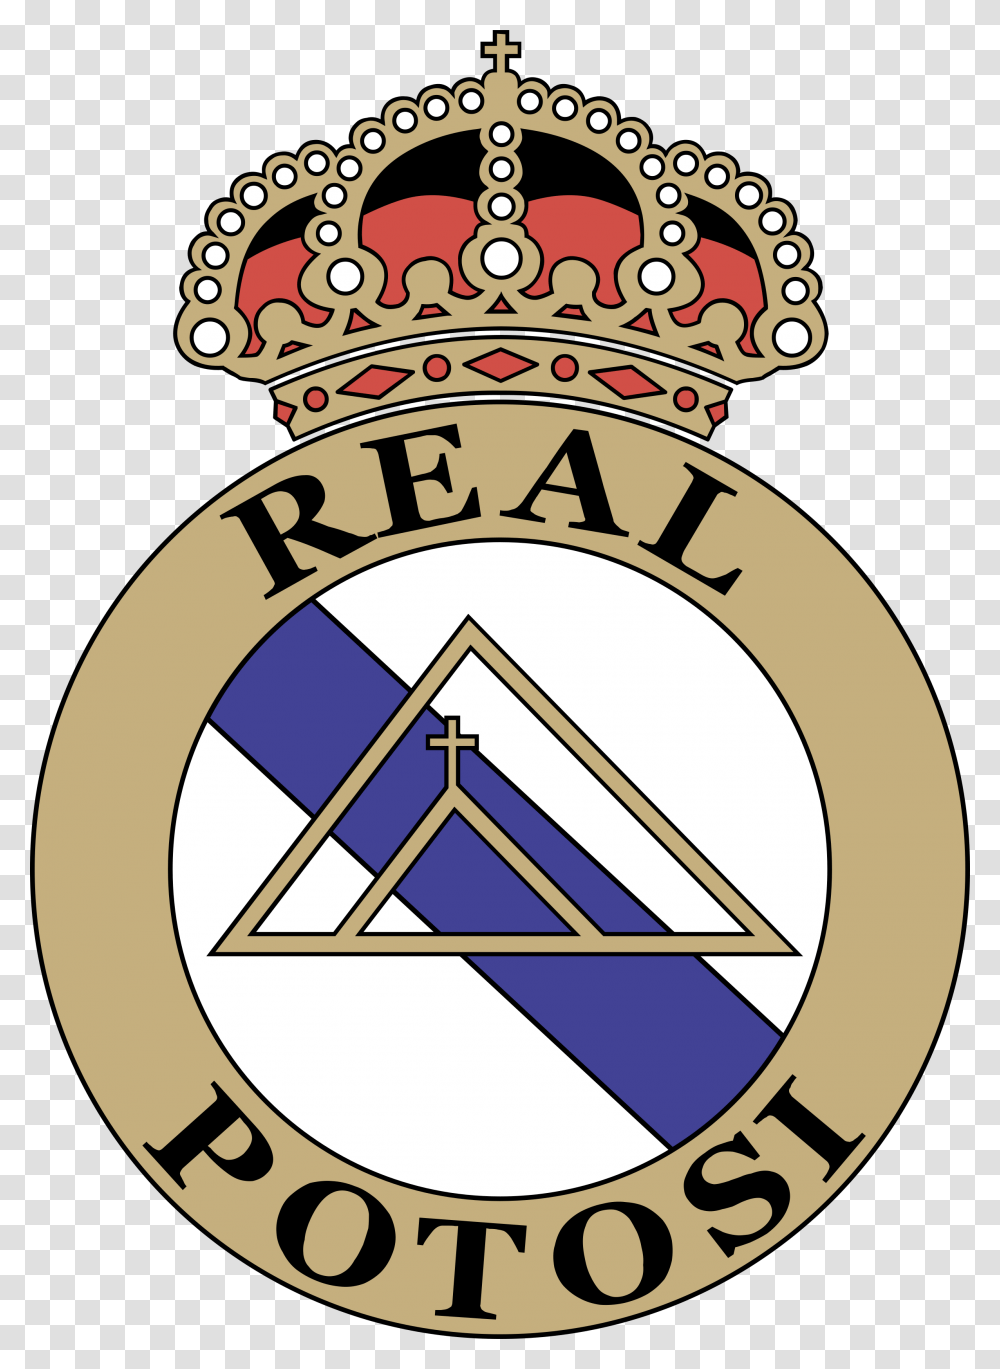 Club Real Potosi Logo Logo De Real Potosi, Trademark, Badge, Emblem Transparent Png